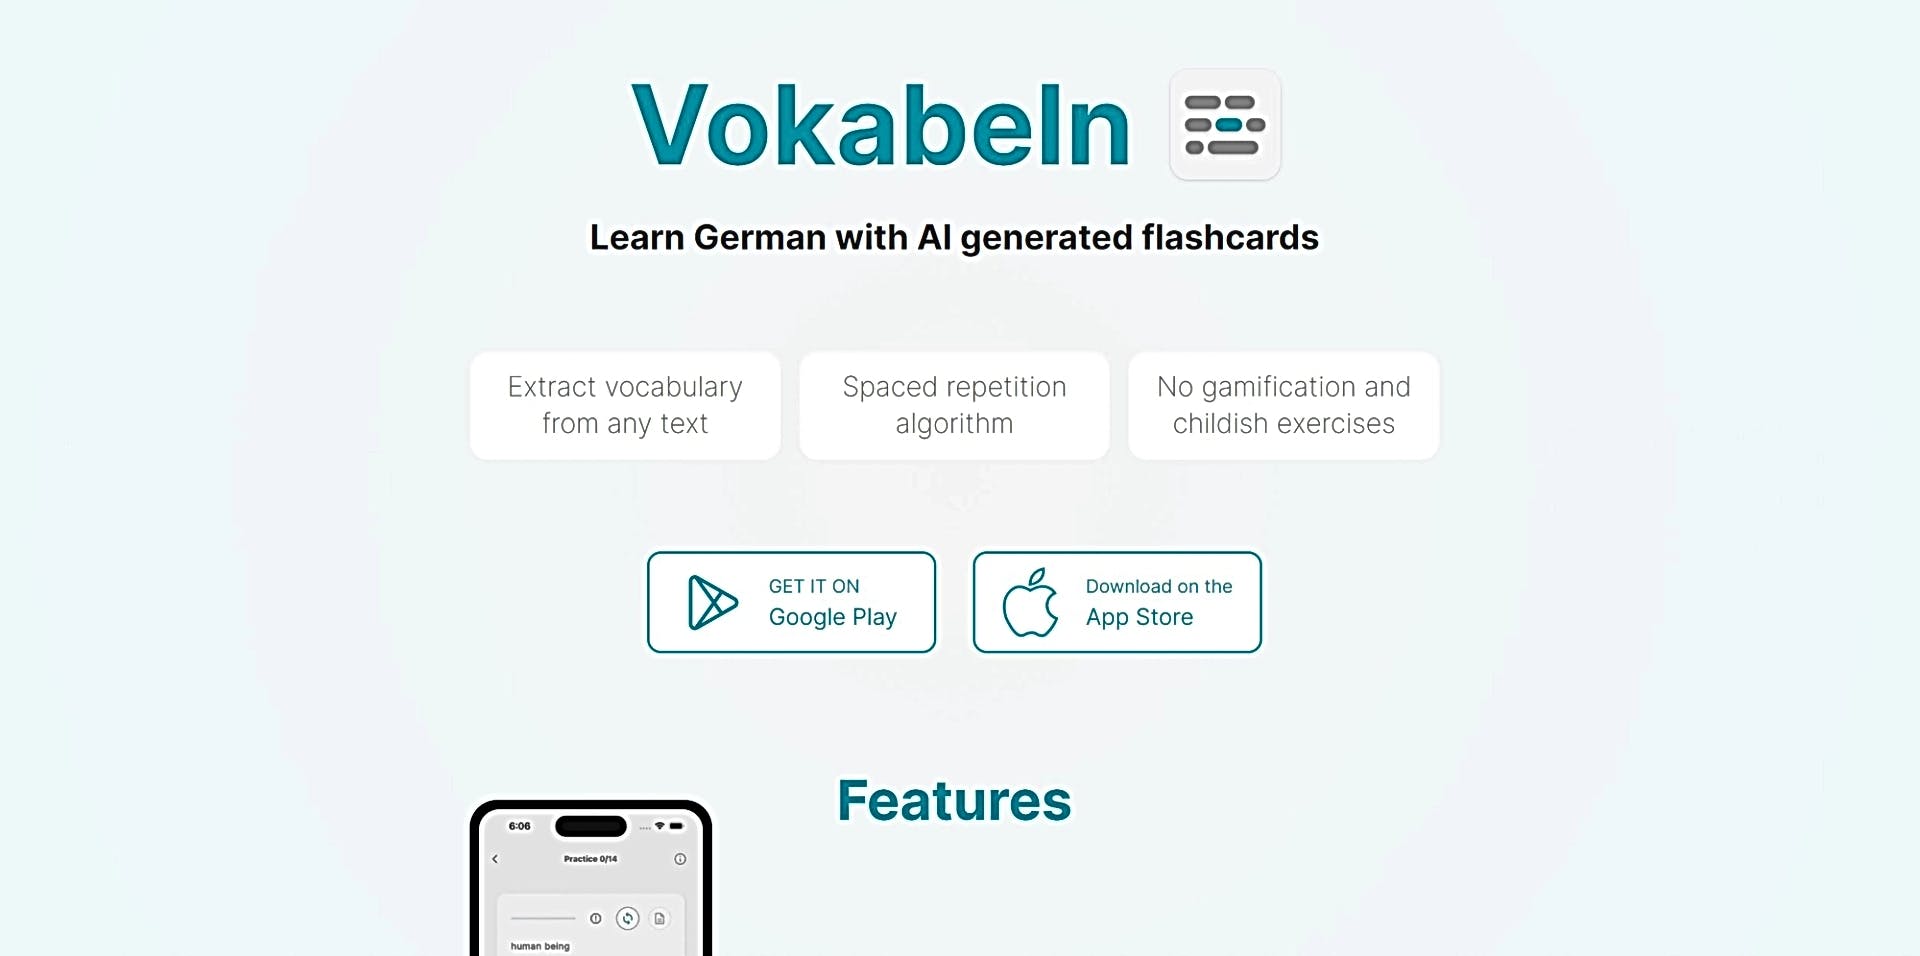 Vokabeln featured